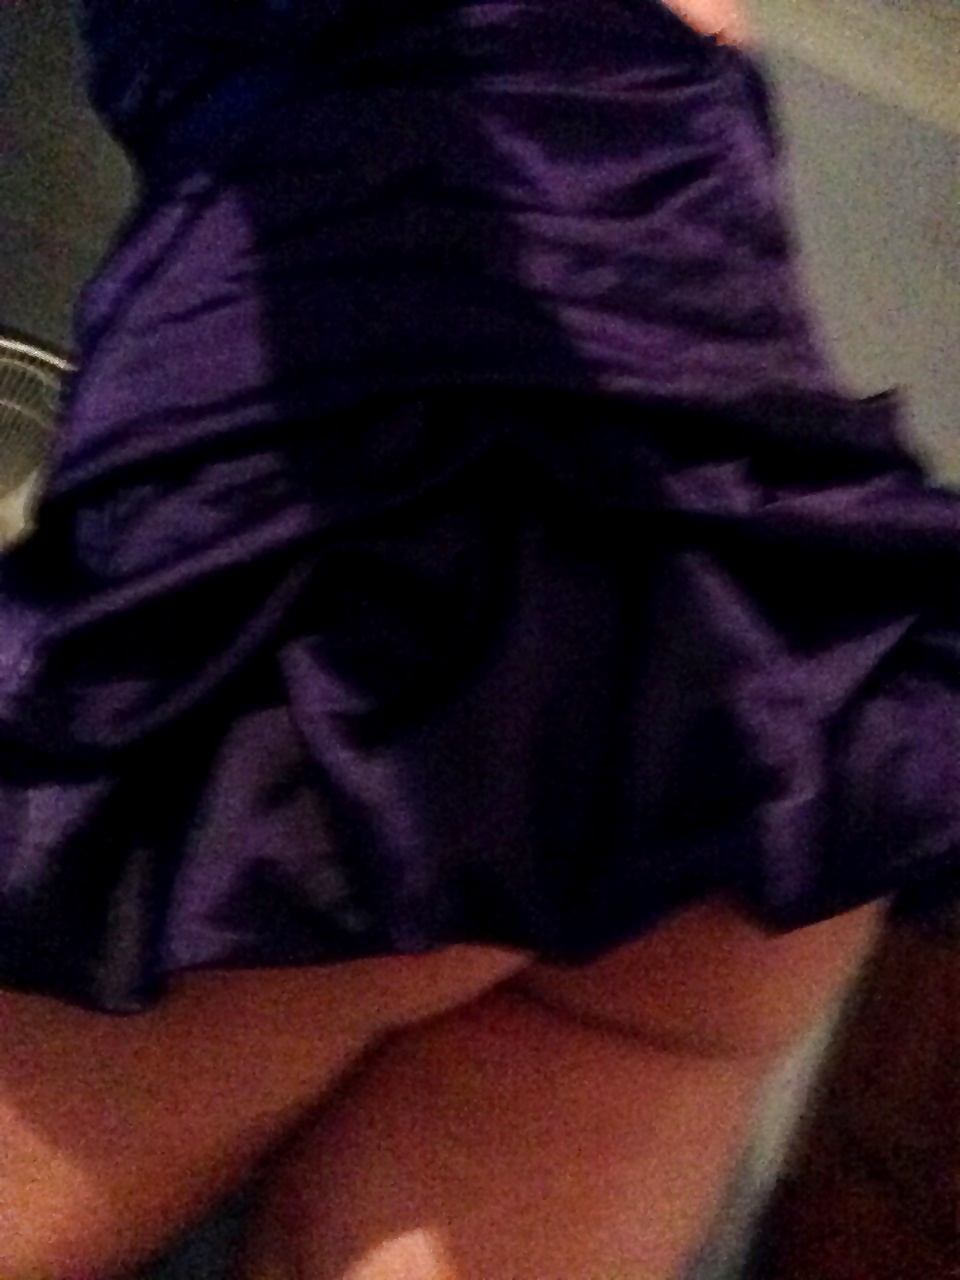 Super short purple dress curvy teen ass showing #41104187